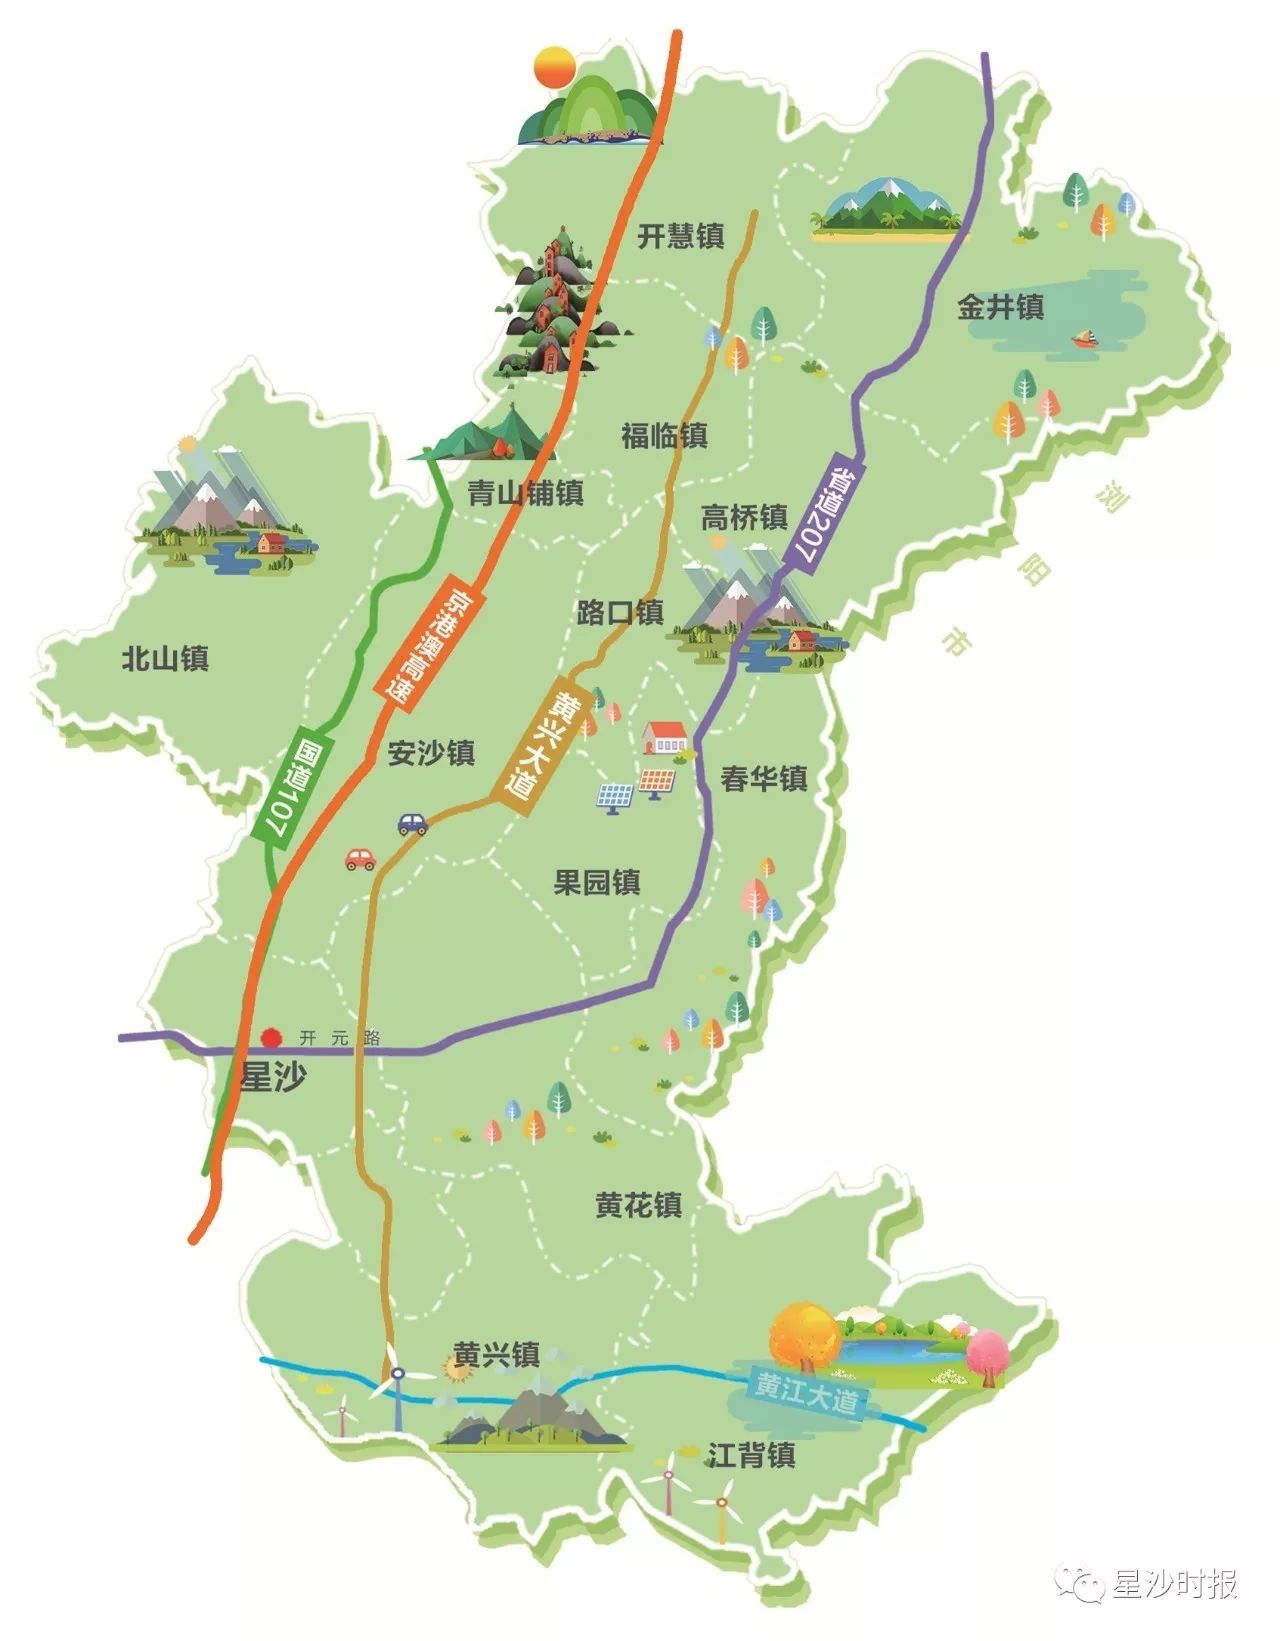 长沙县最全爬山地图!景观,用餐,路线统统有.周末